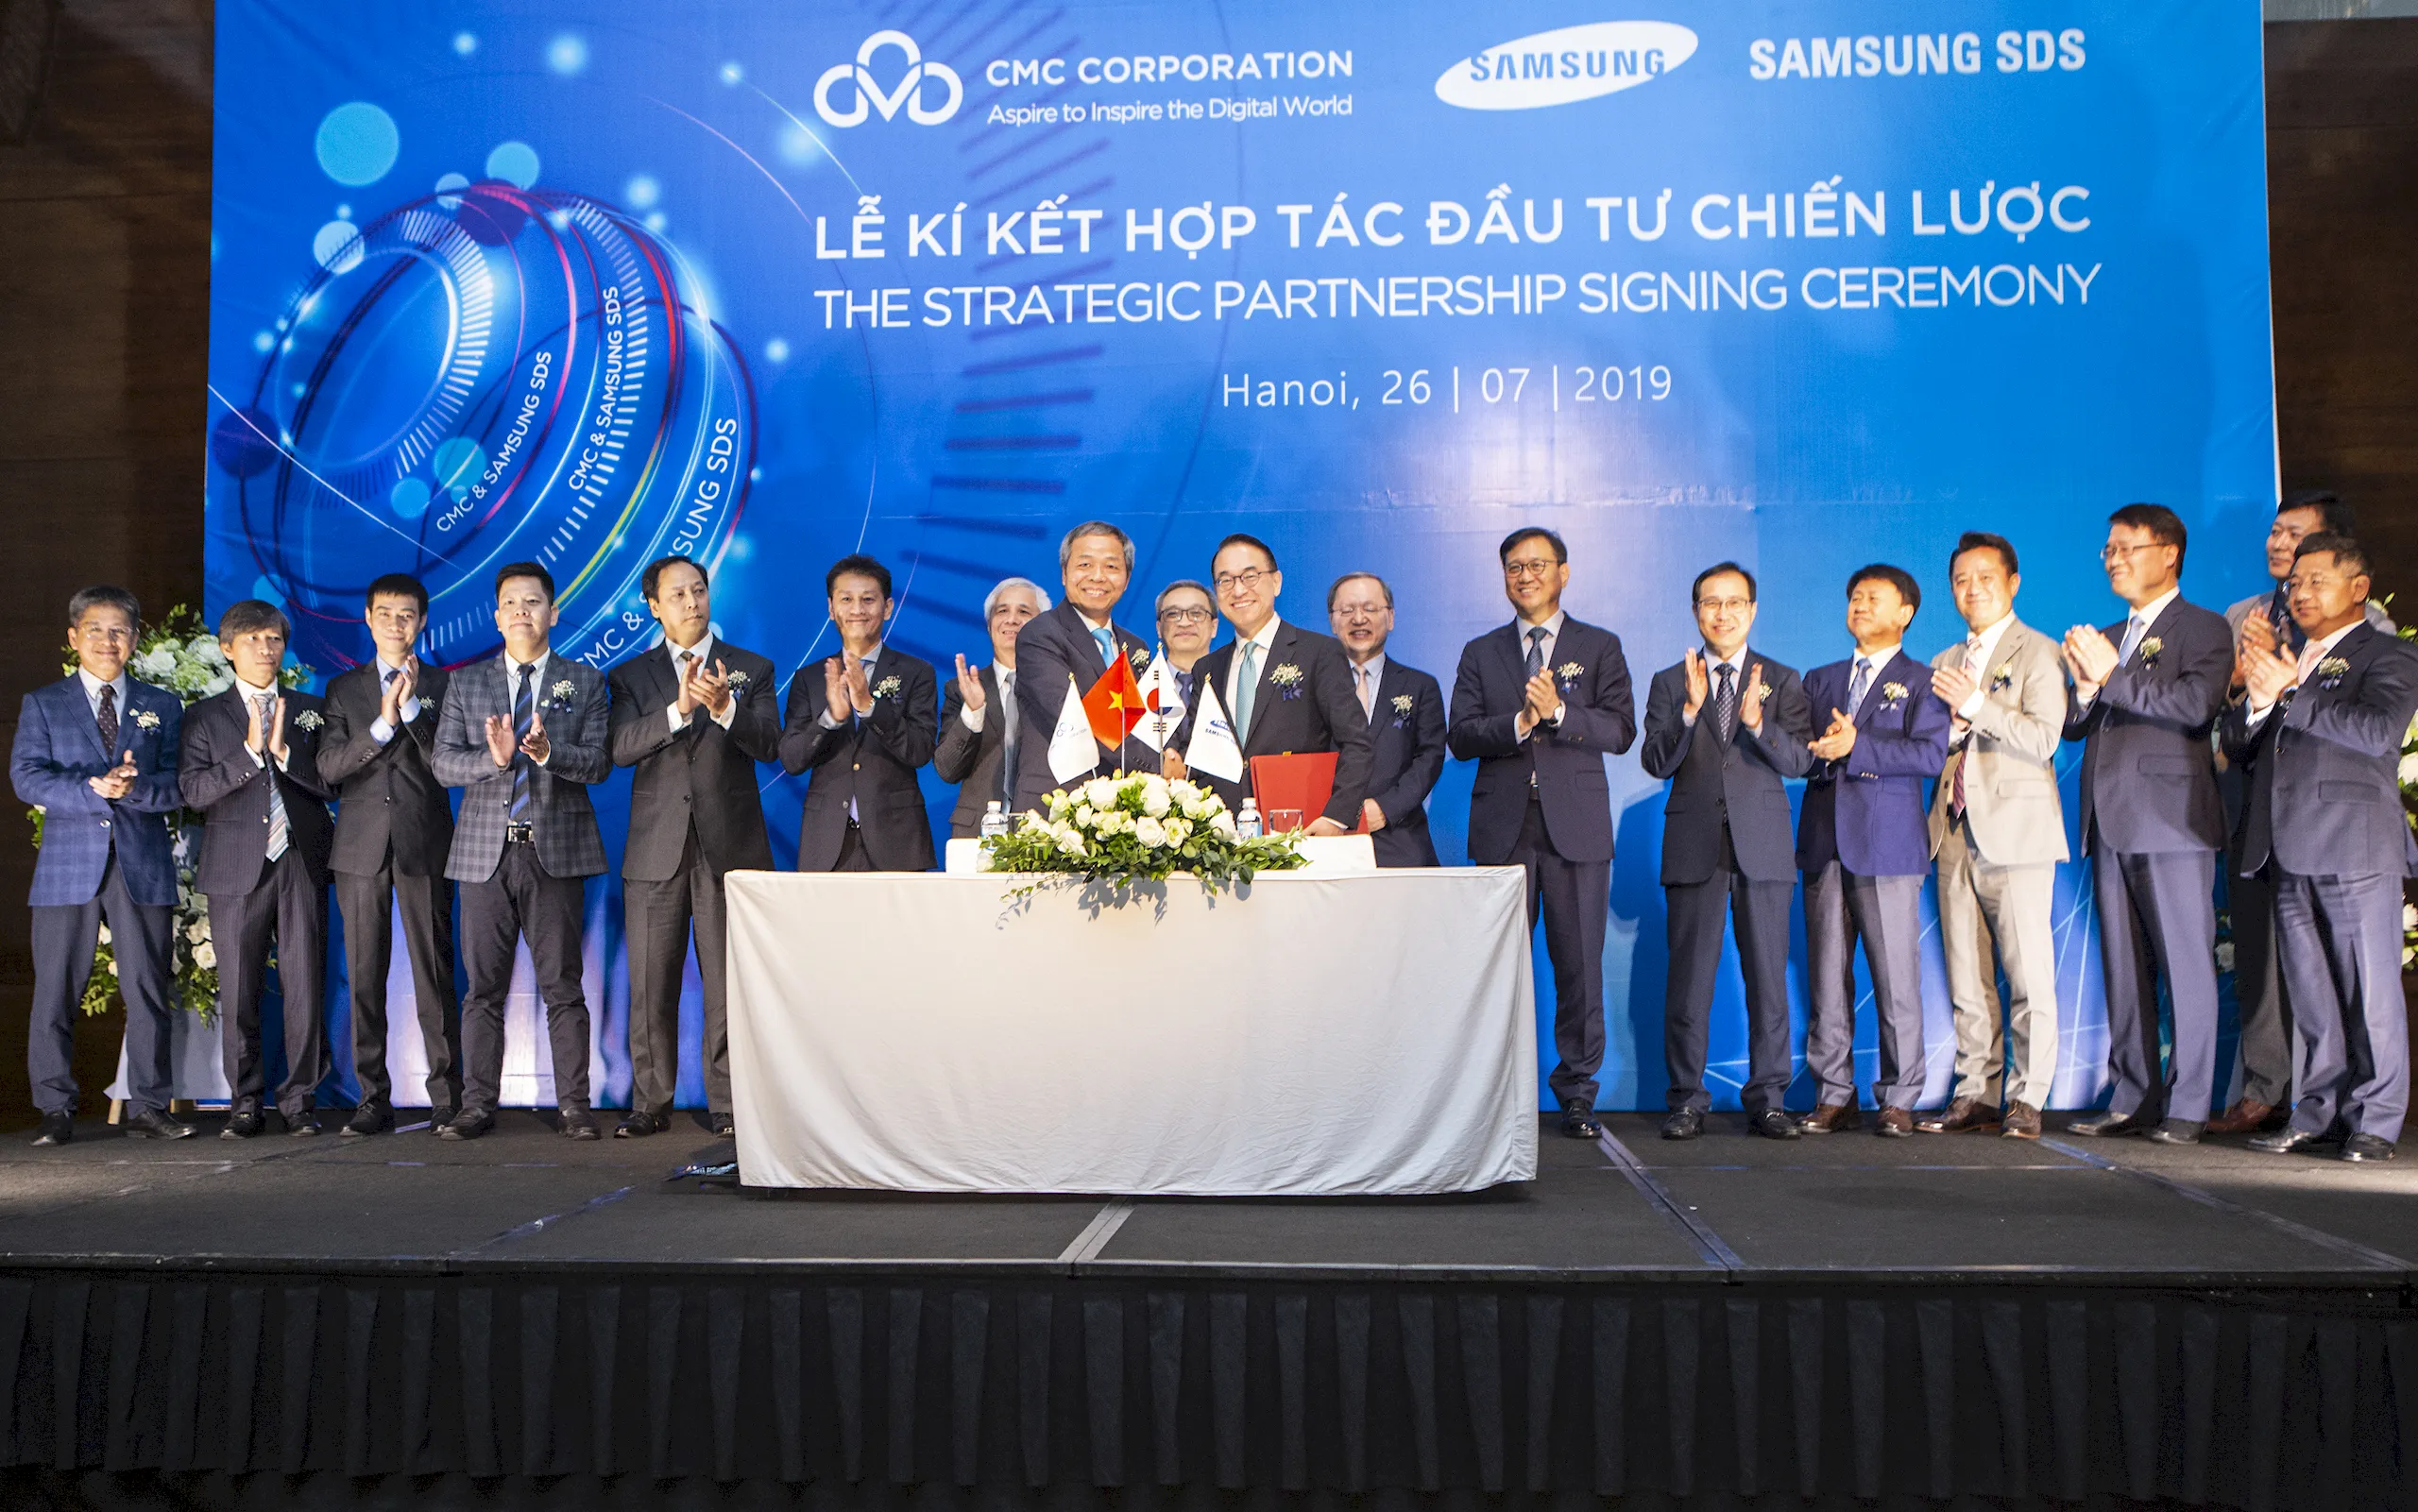 Samsung SDS thúc đẩy mở rộng hợp tác chiến lược với Tập đoàn Công nghệ CMC